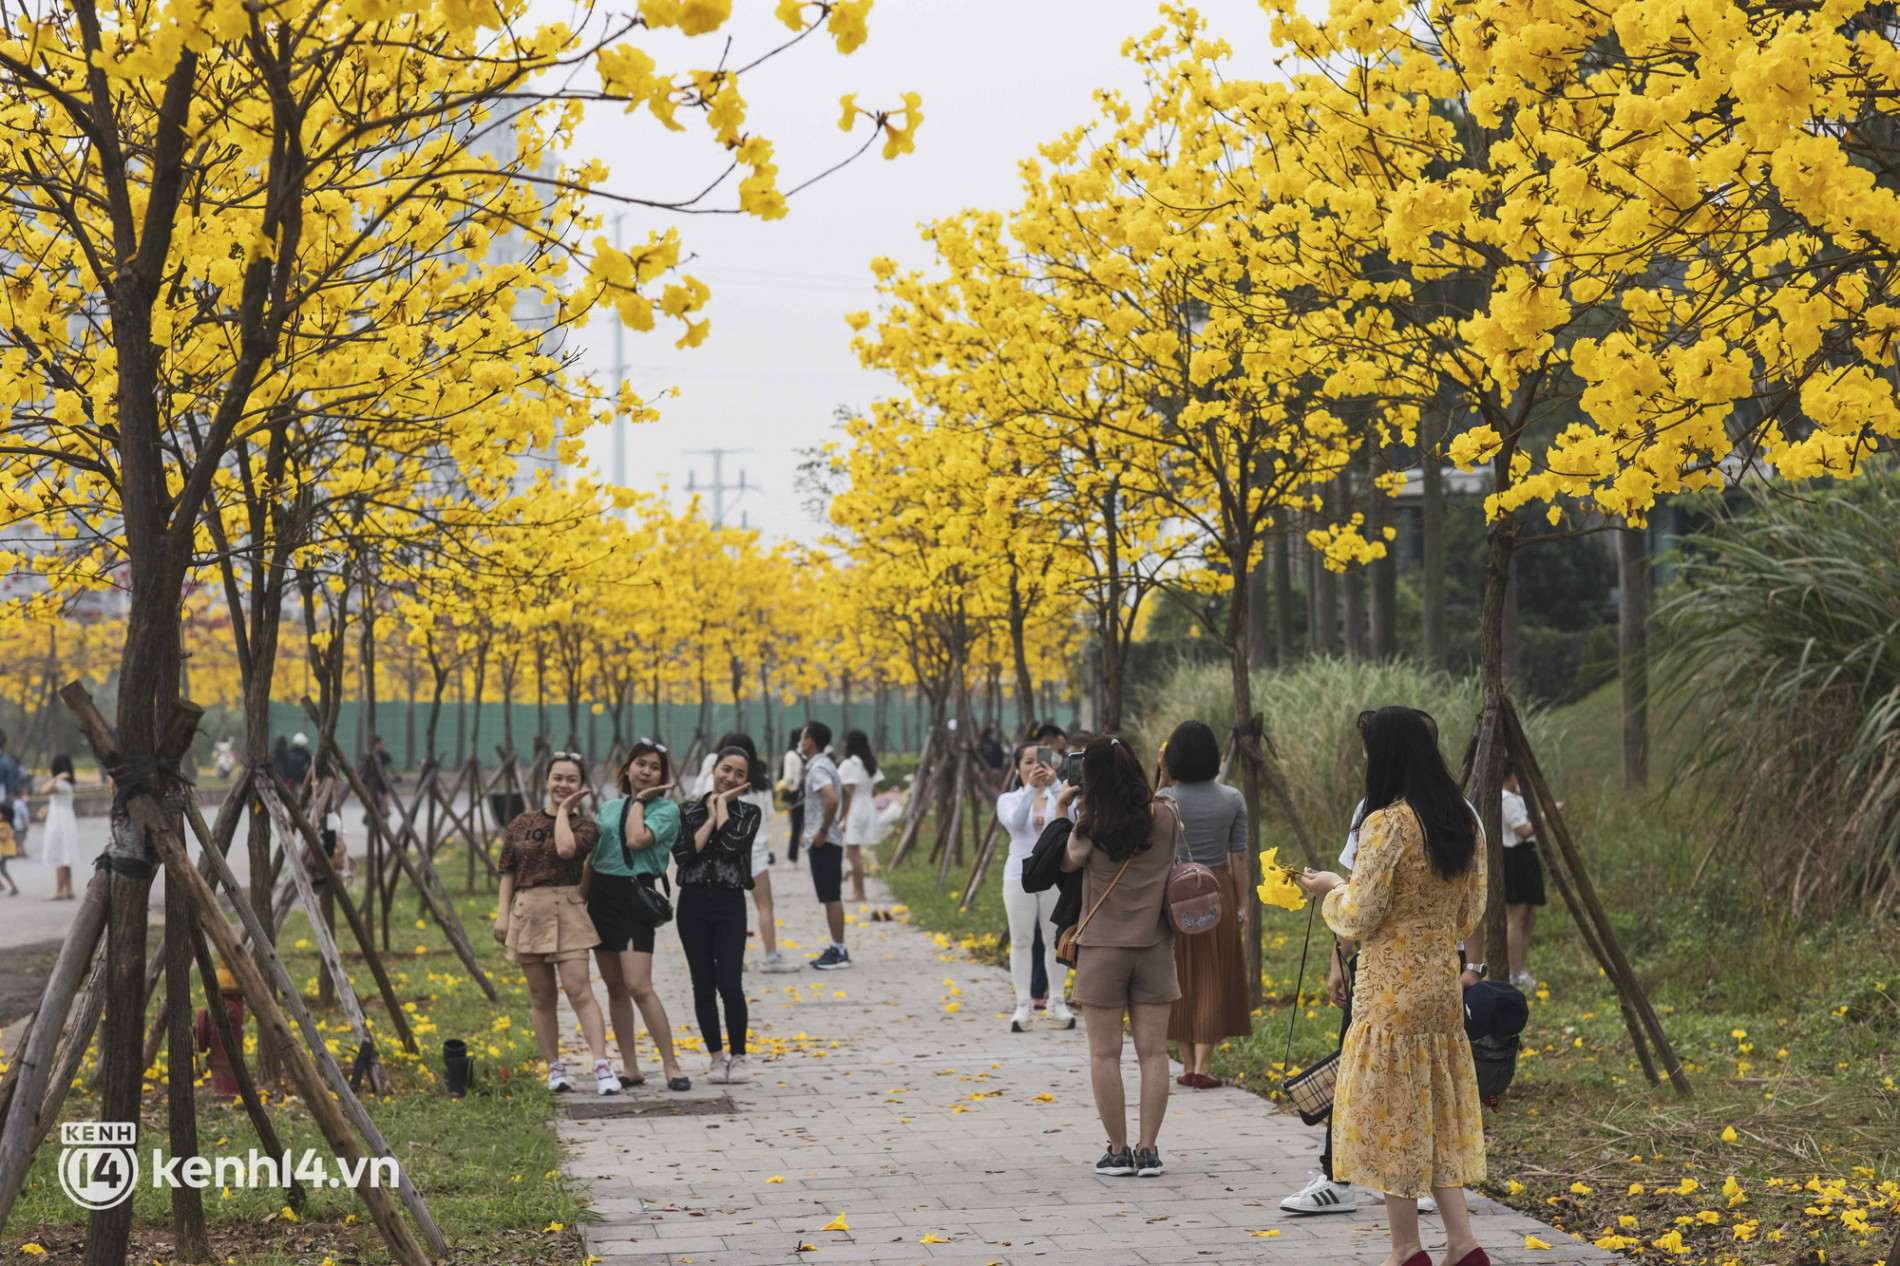 Con đường hoa vàng ở Hà Nội mới nổi 2 ngày đã đông nghịt người kéo đến check-in, có cả ekip “sống ảo” hùng hậu - Ảnh 3.